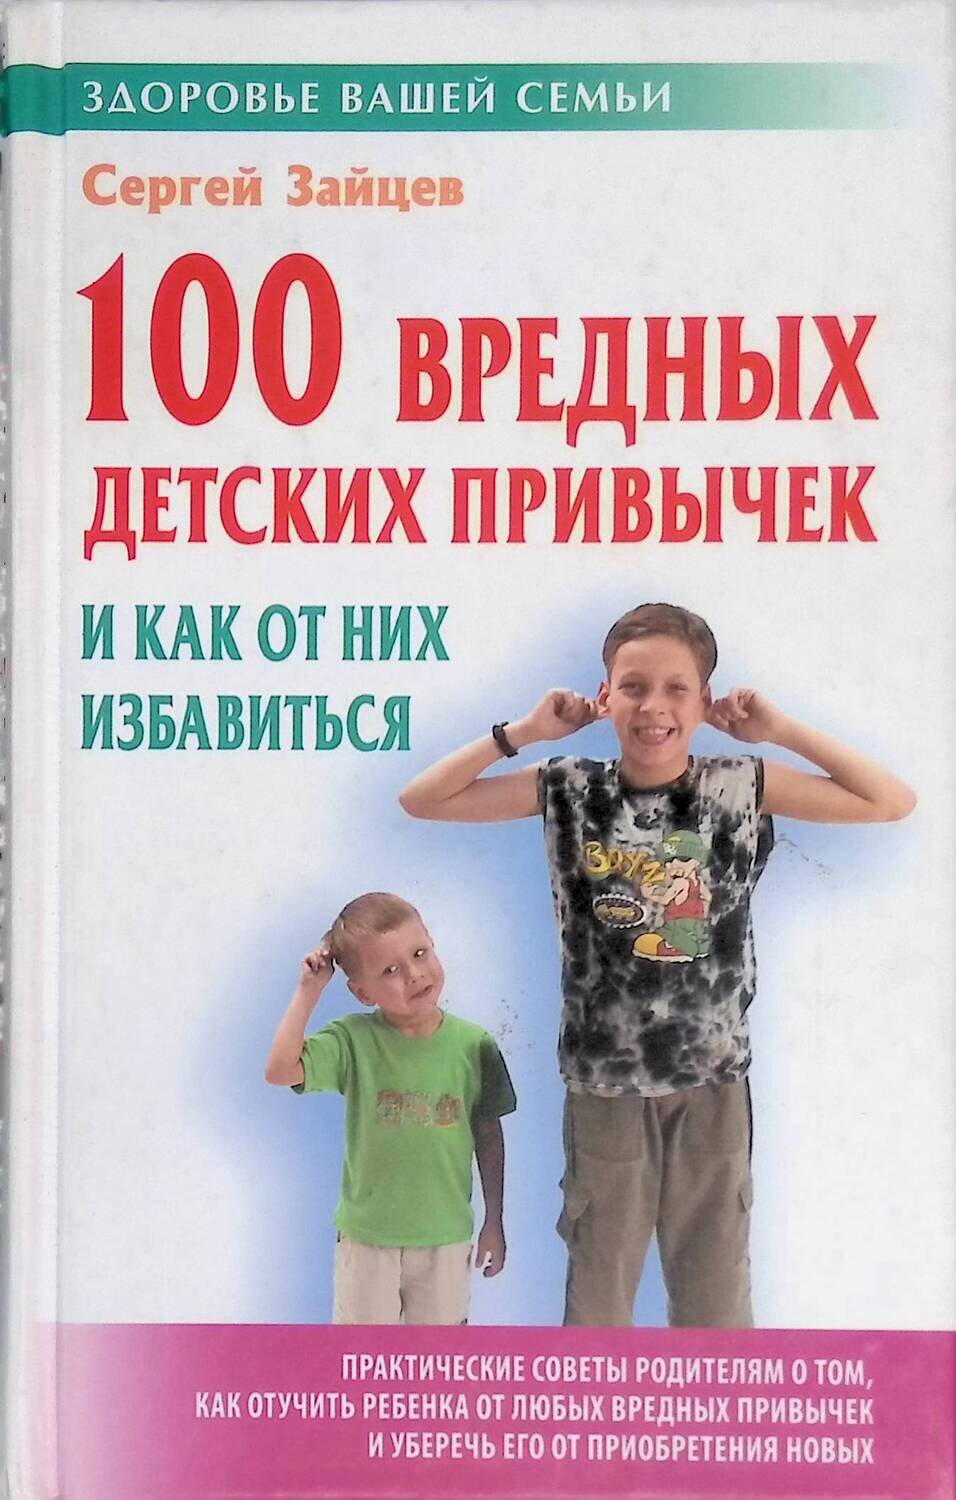 100 вредных детских привычек и как от них избавиться; Сергей Зайцев